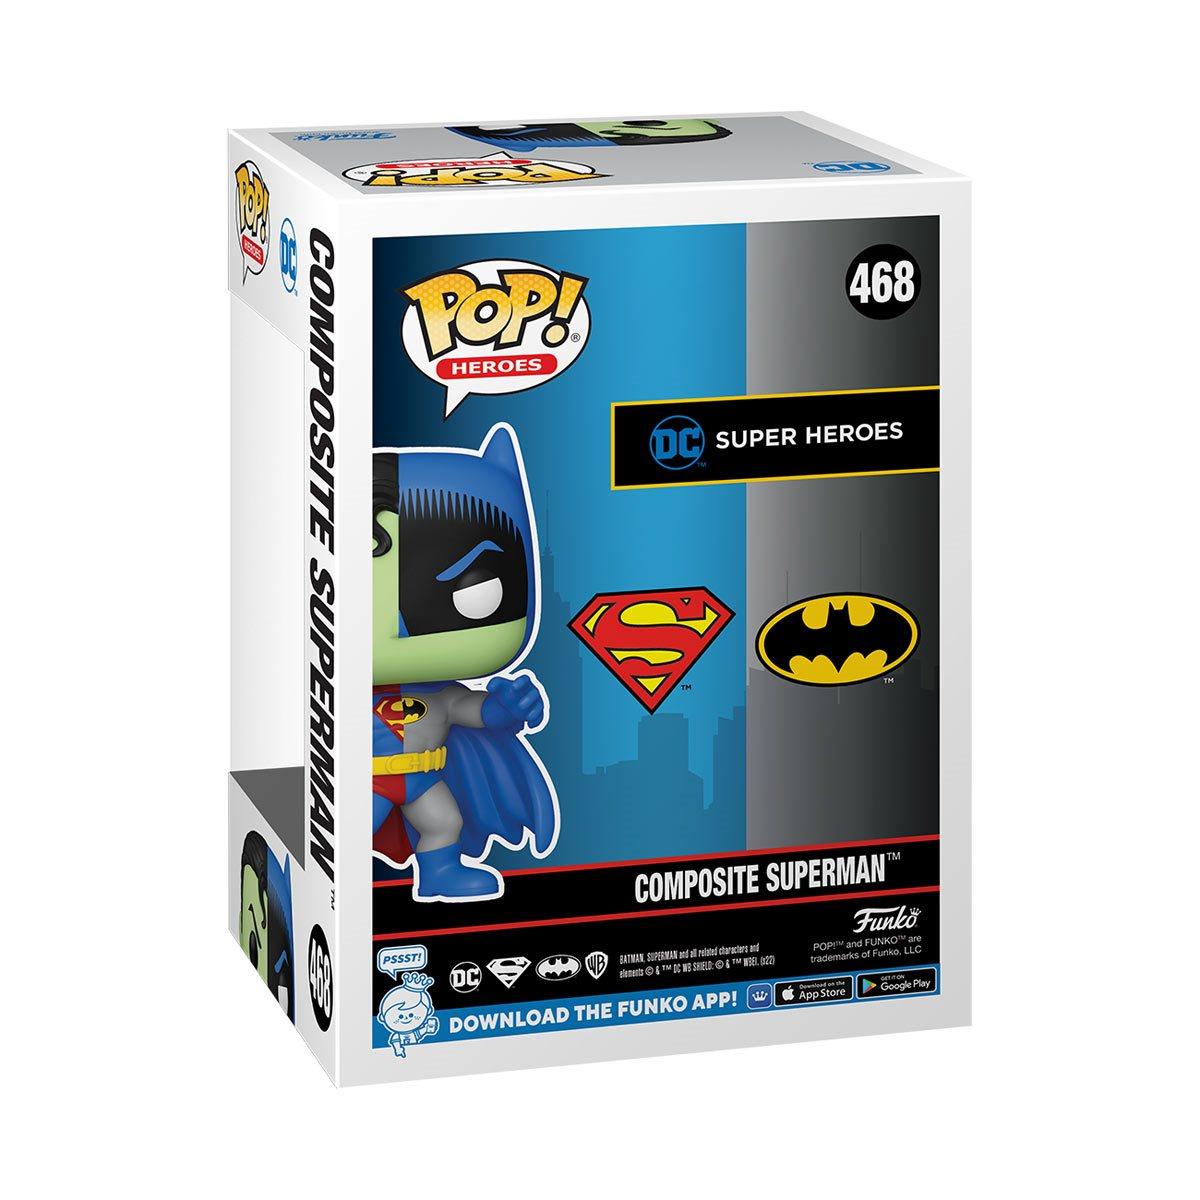 Funko Pop DC Comics Composite Superman and Batman - BumbleToys - 18+, Batman, Boys, collectible, collectors, DC Comics, Funko, OXE, Pre-Order